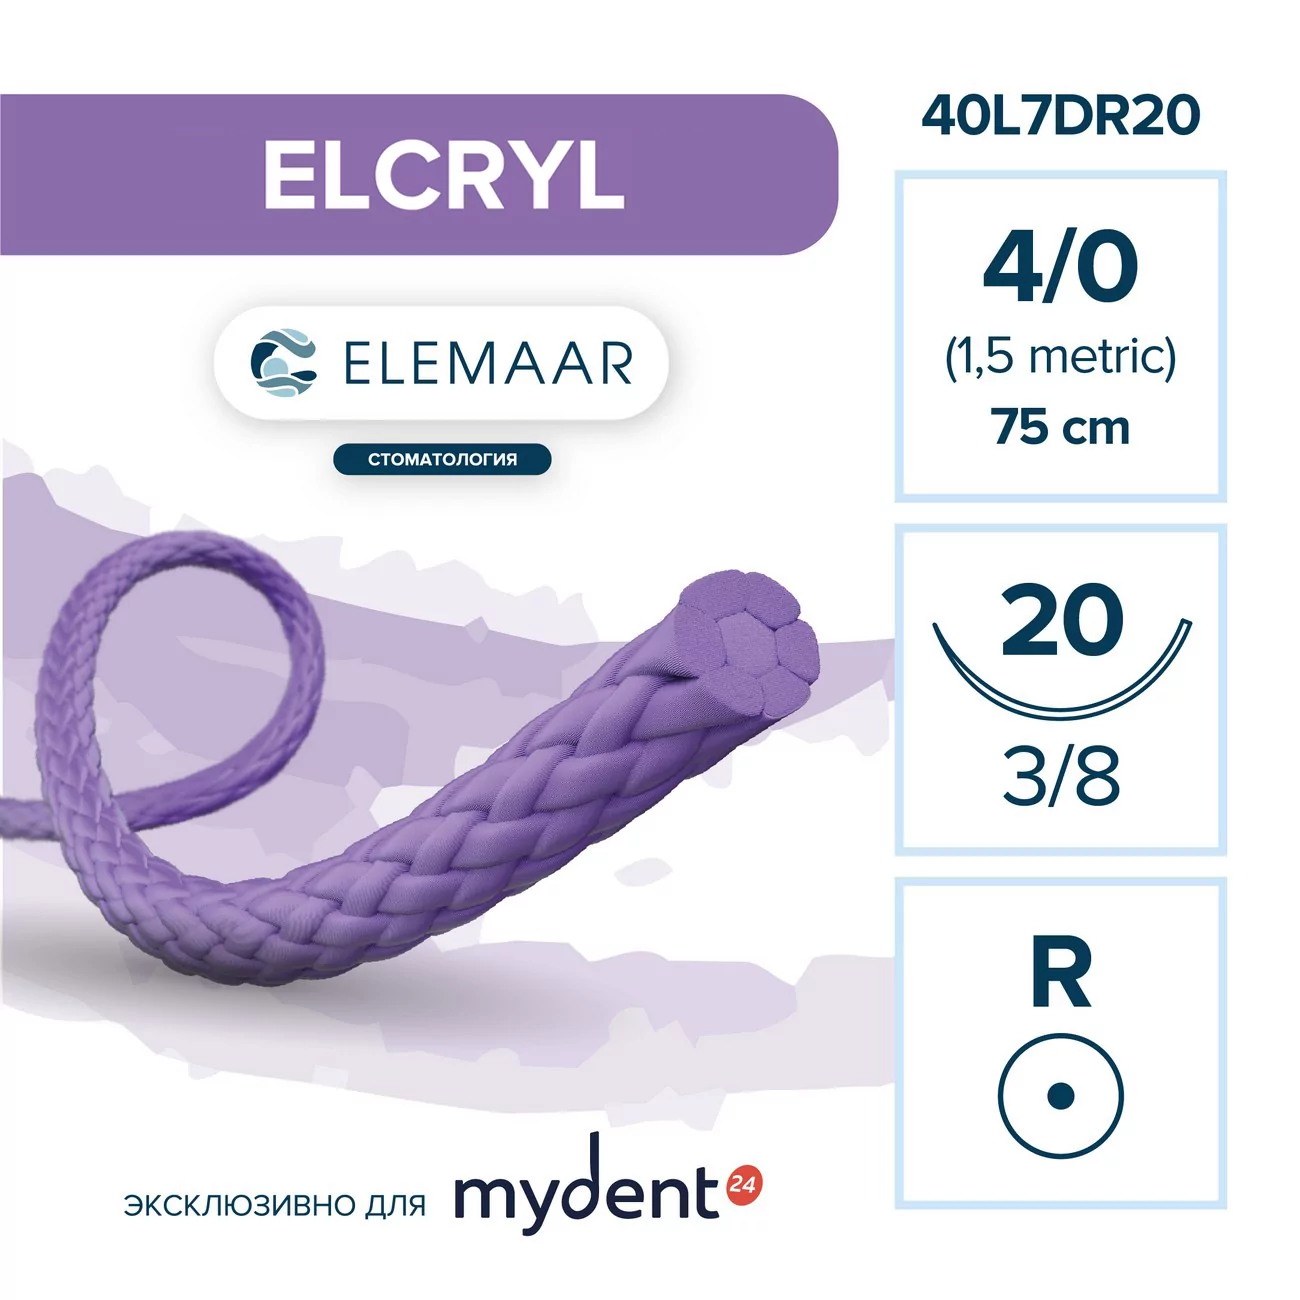 Шовный материал ELCRYL 4/0 (12 шт, 75 см, 3/8, 20 мм, колющая)